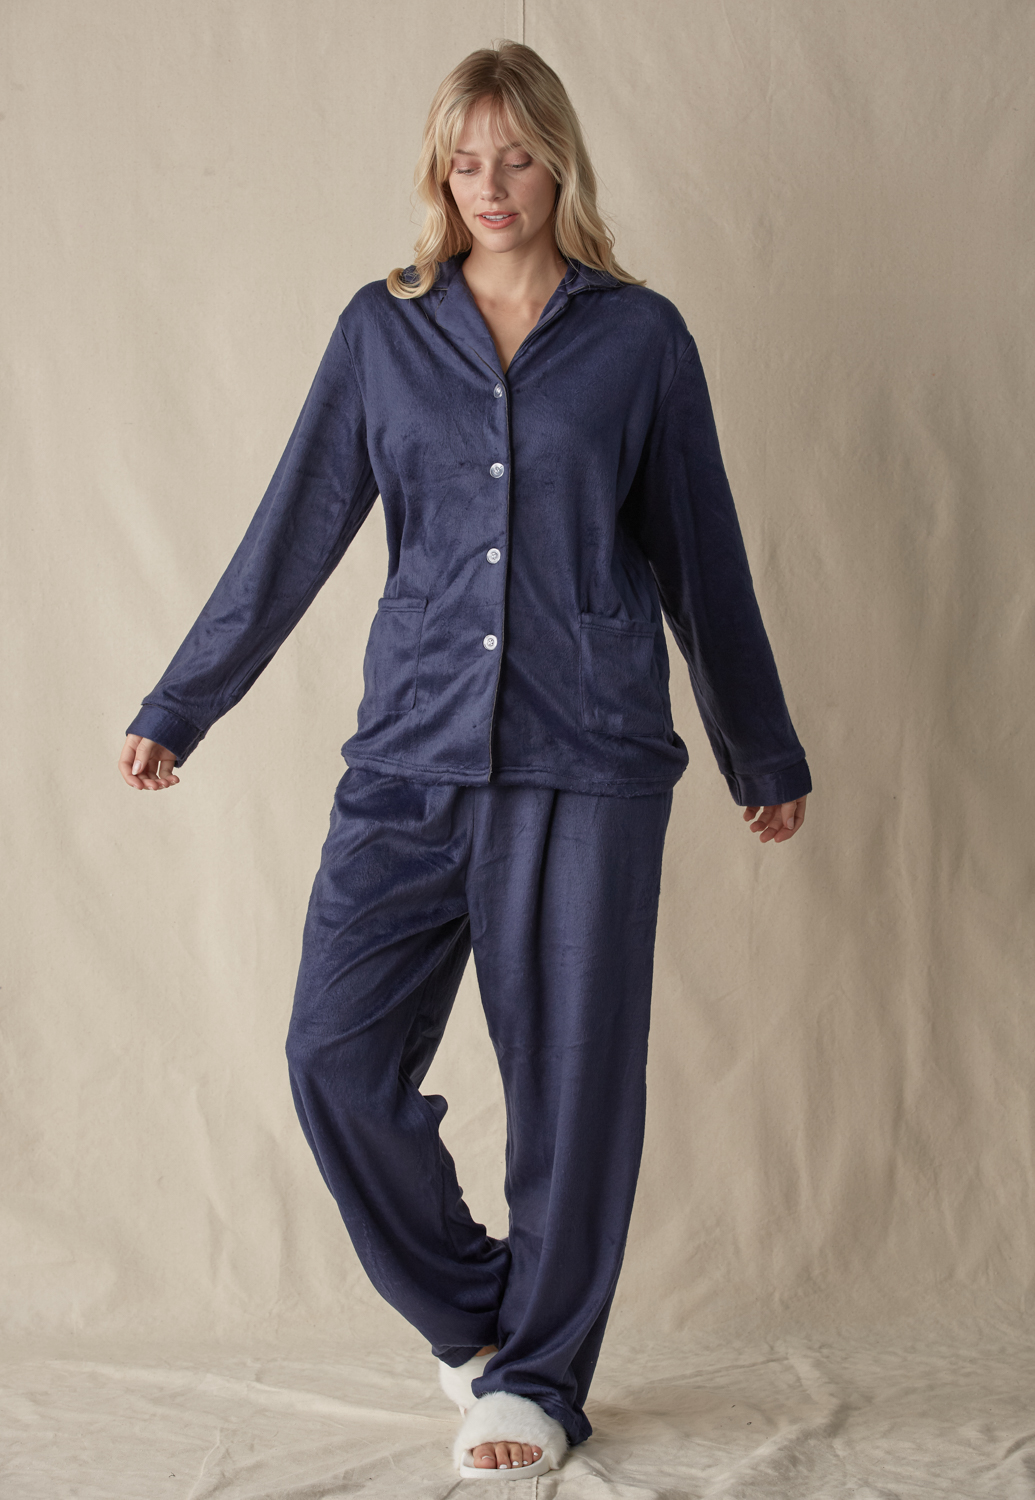 Cozy Pajama Set